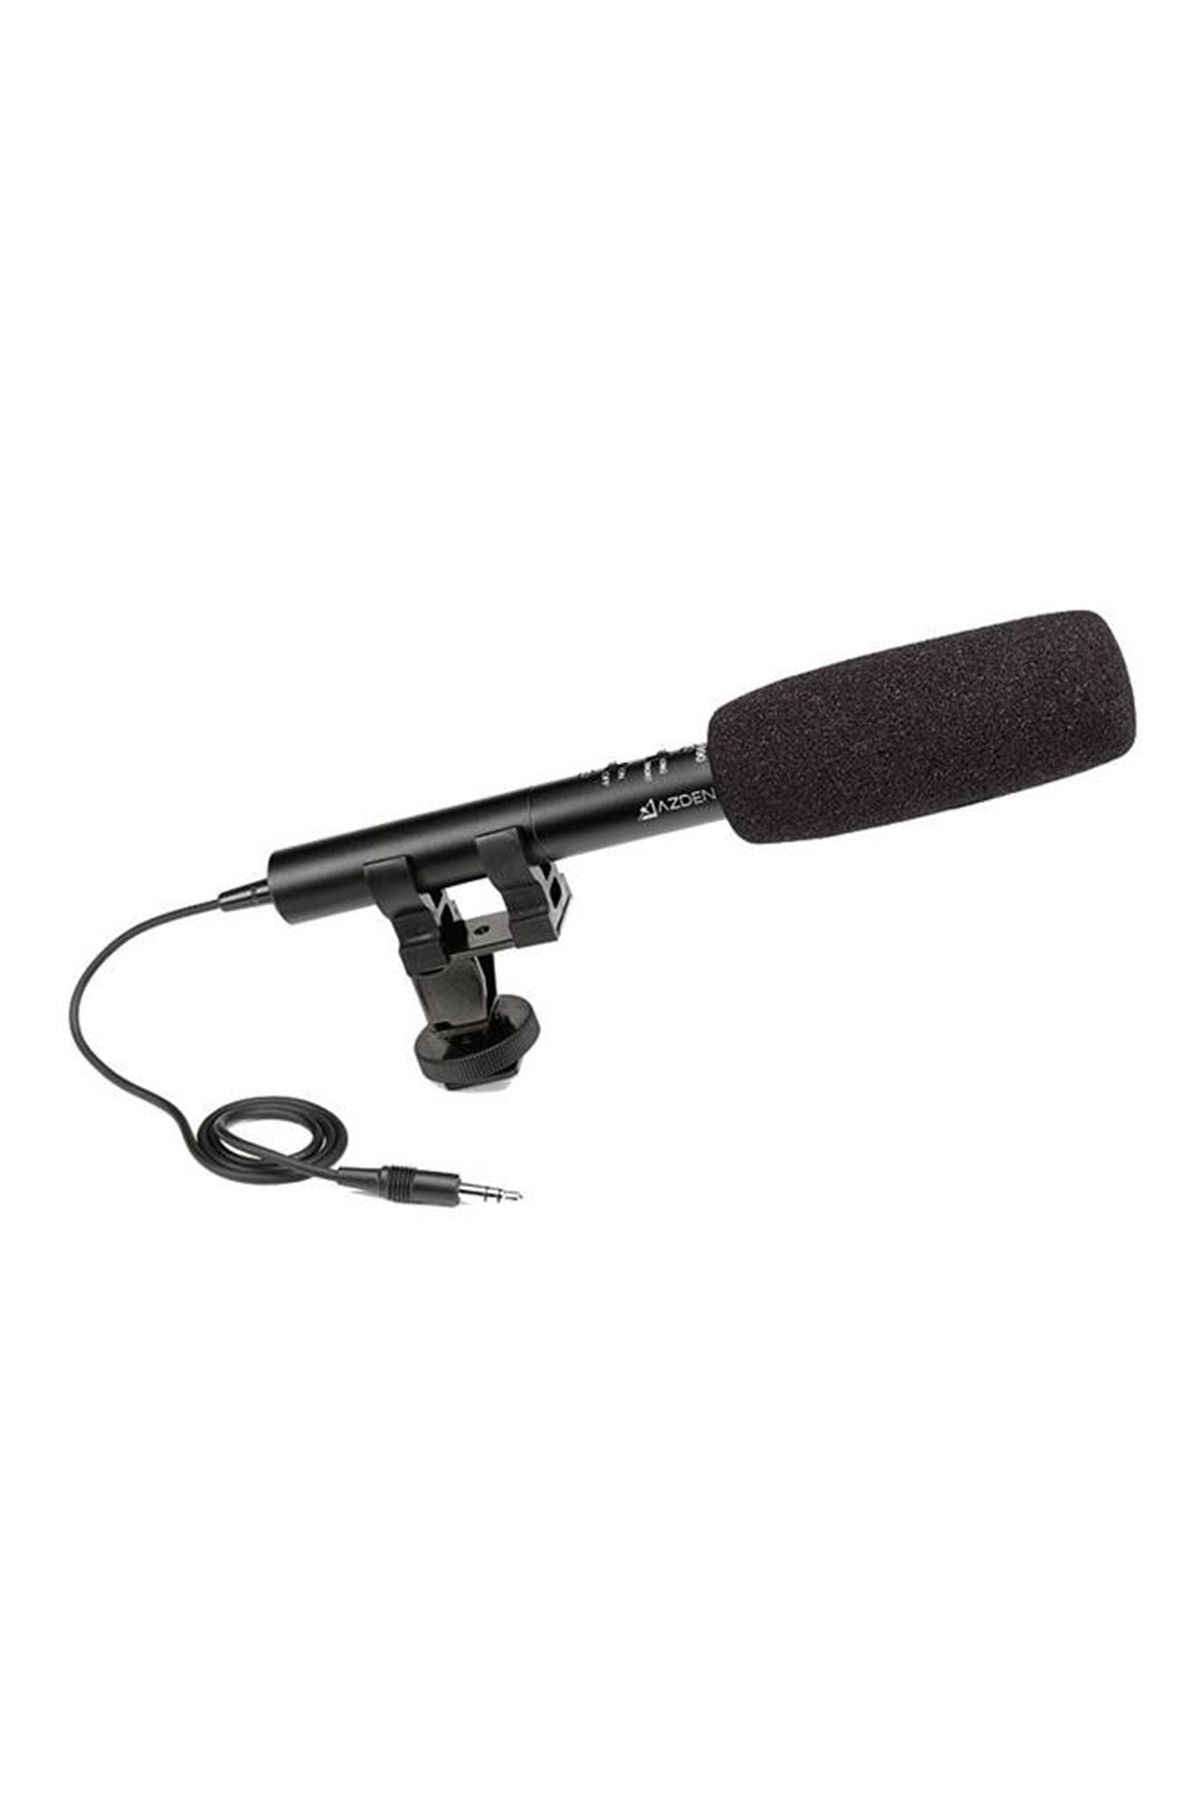 Azden Sgm-990 Dslr Mikrofon